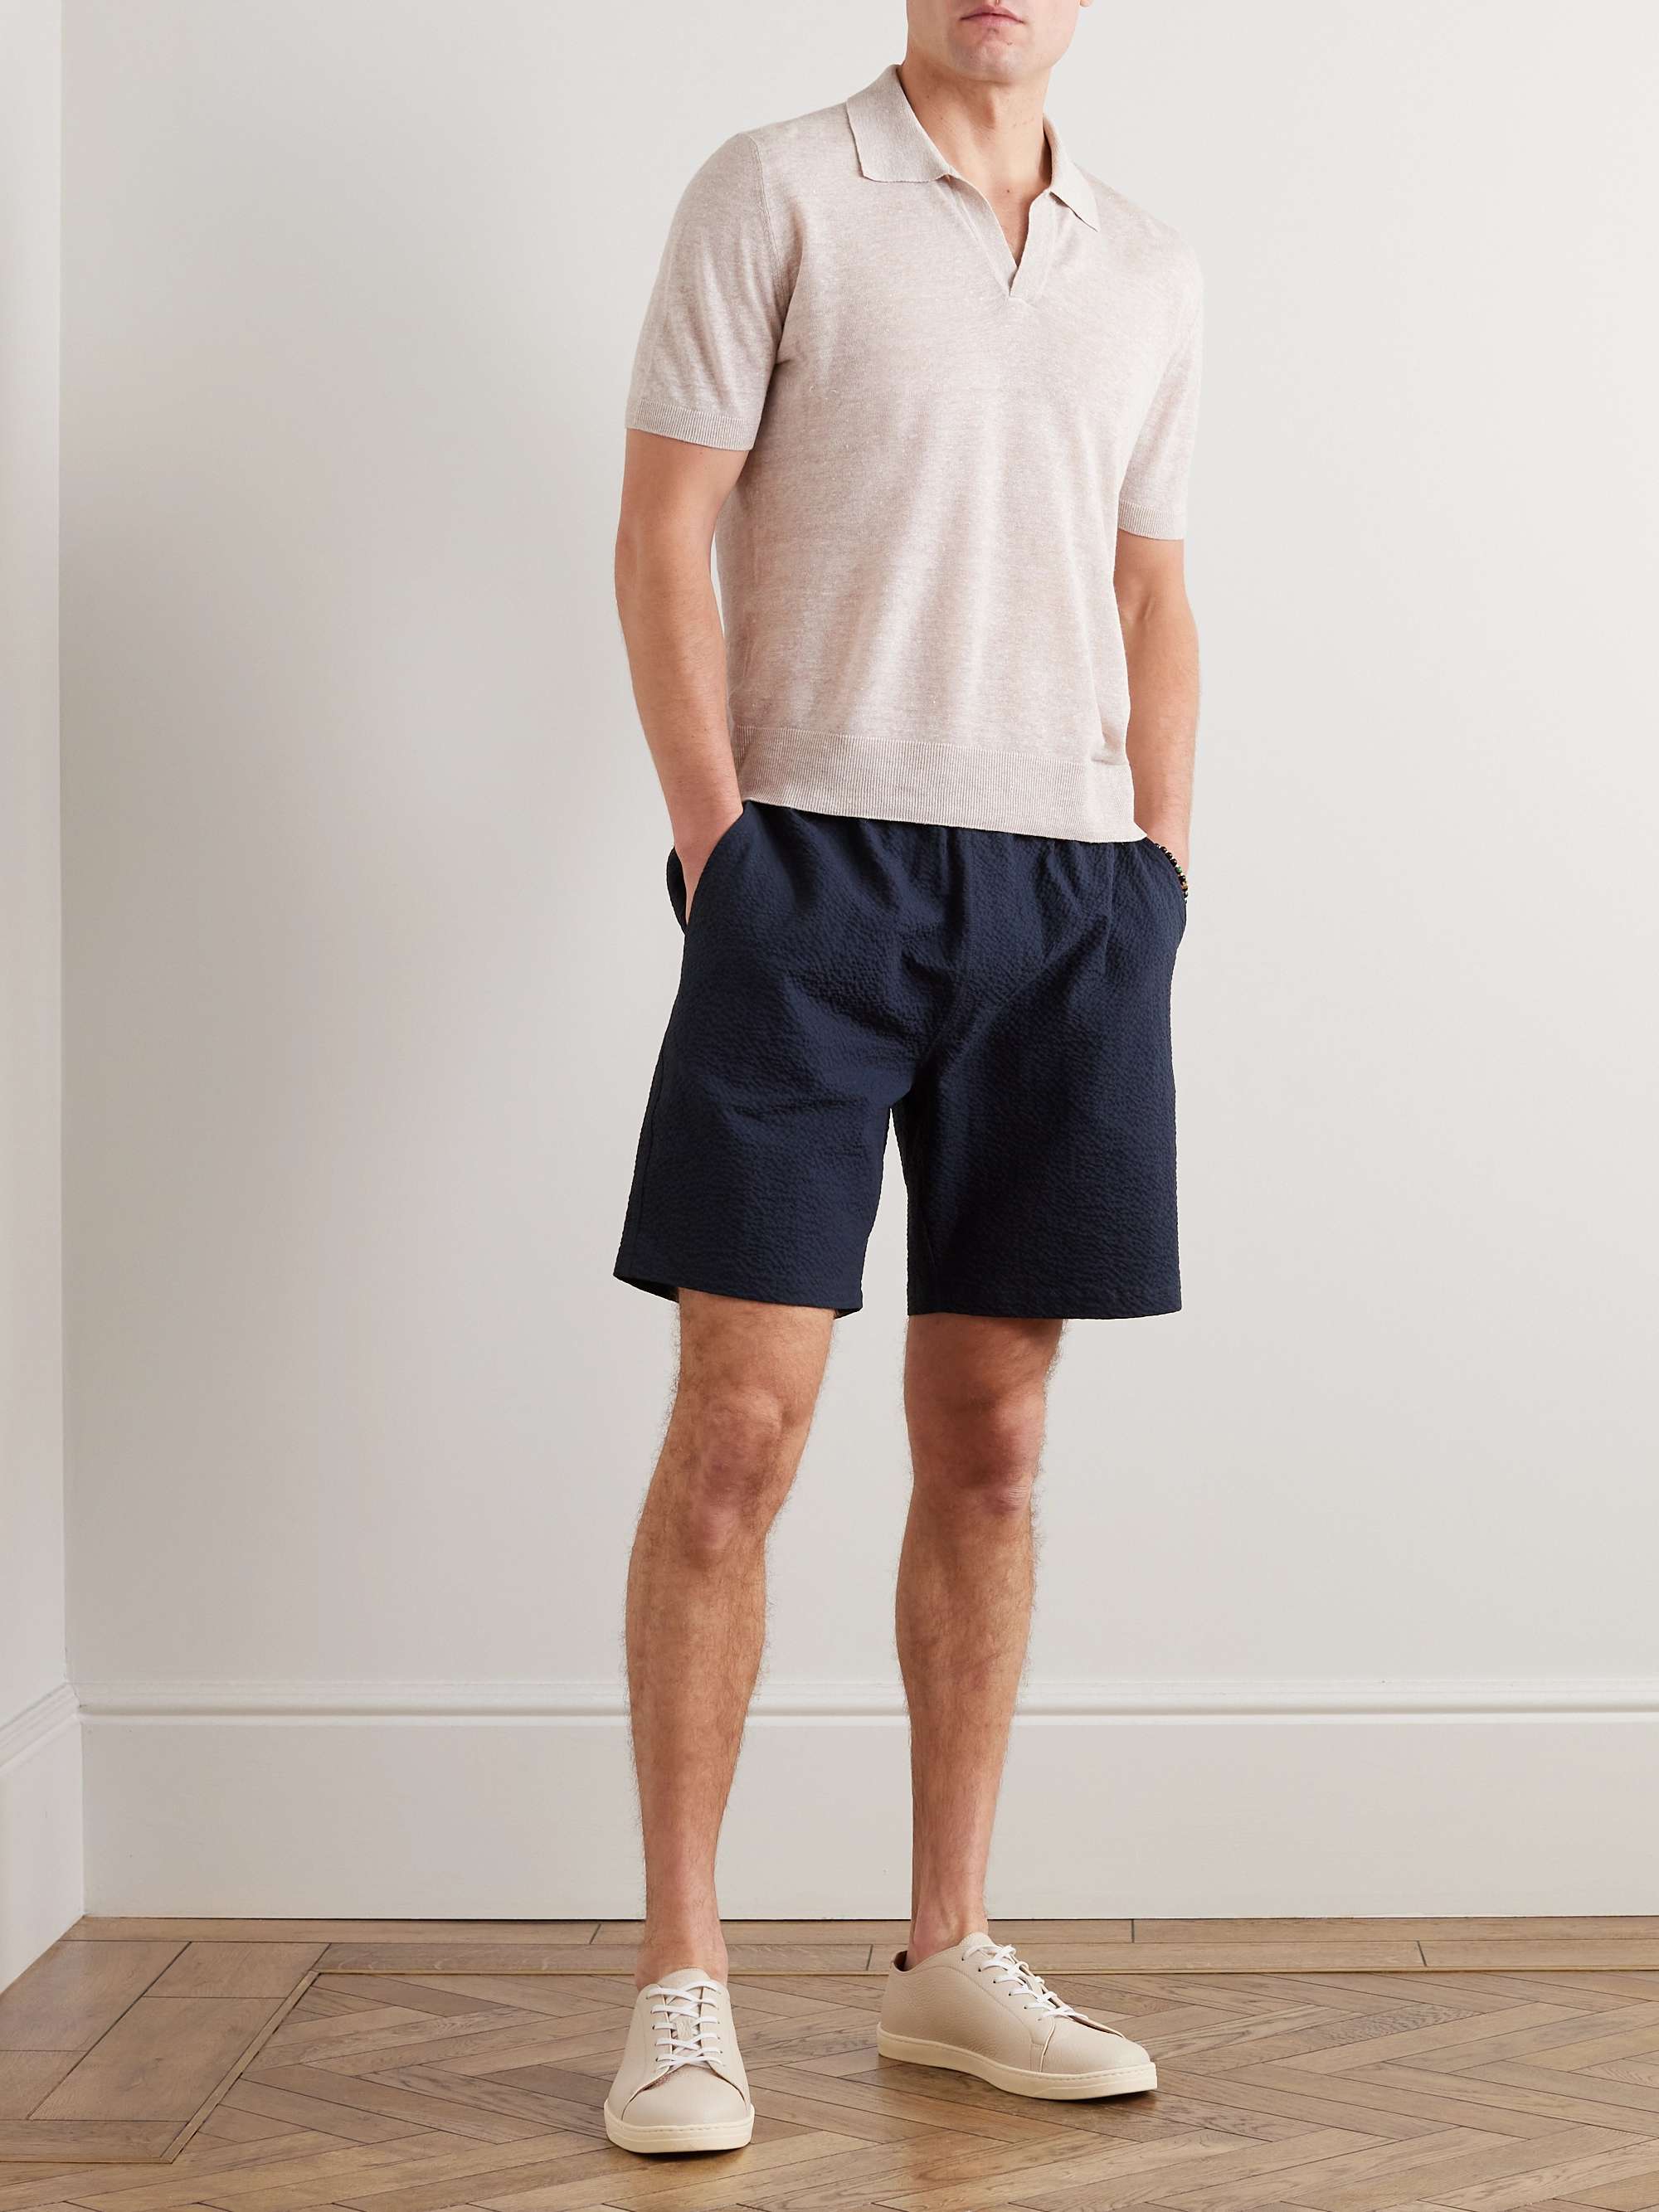 RICHARD JAMES Straight-Leg Cotton-Blend Seersucker Shorts for Men | MR ...